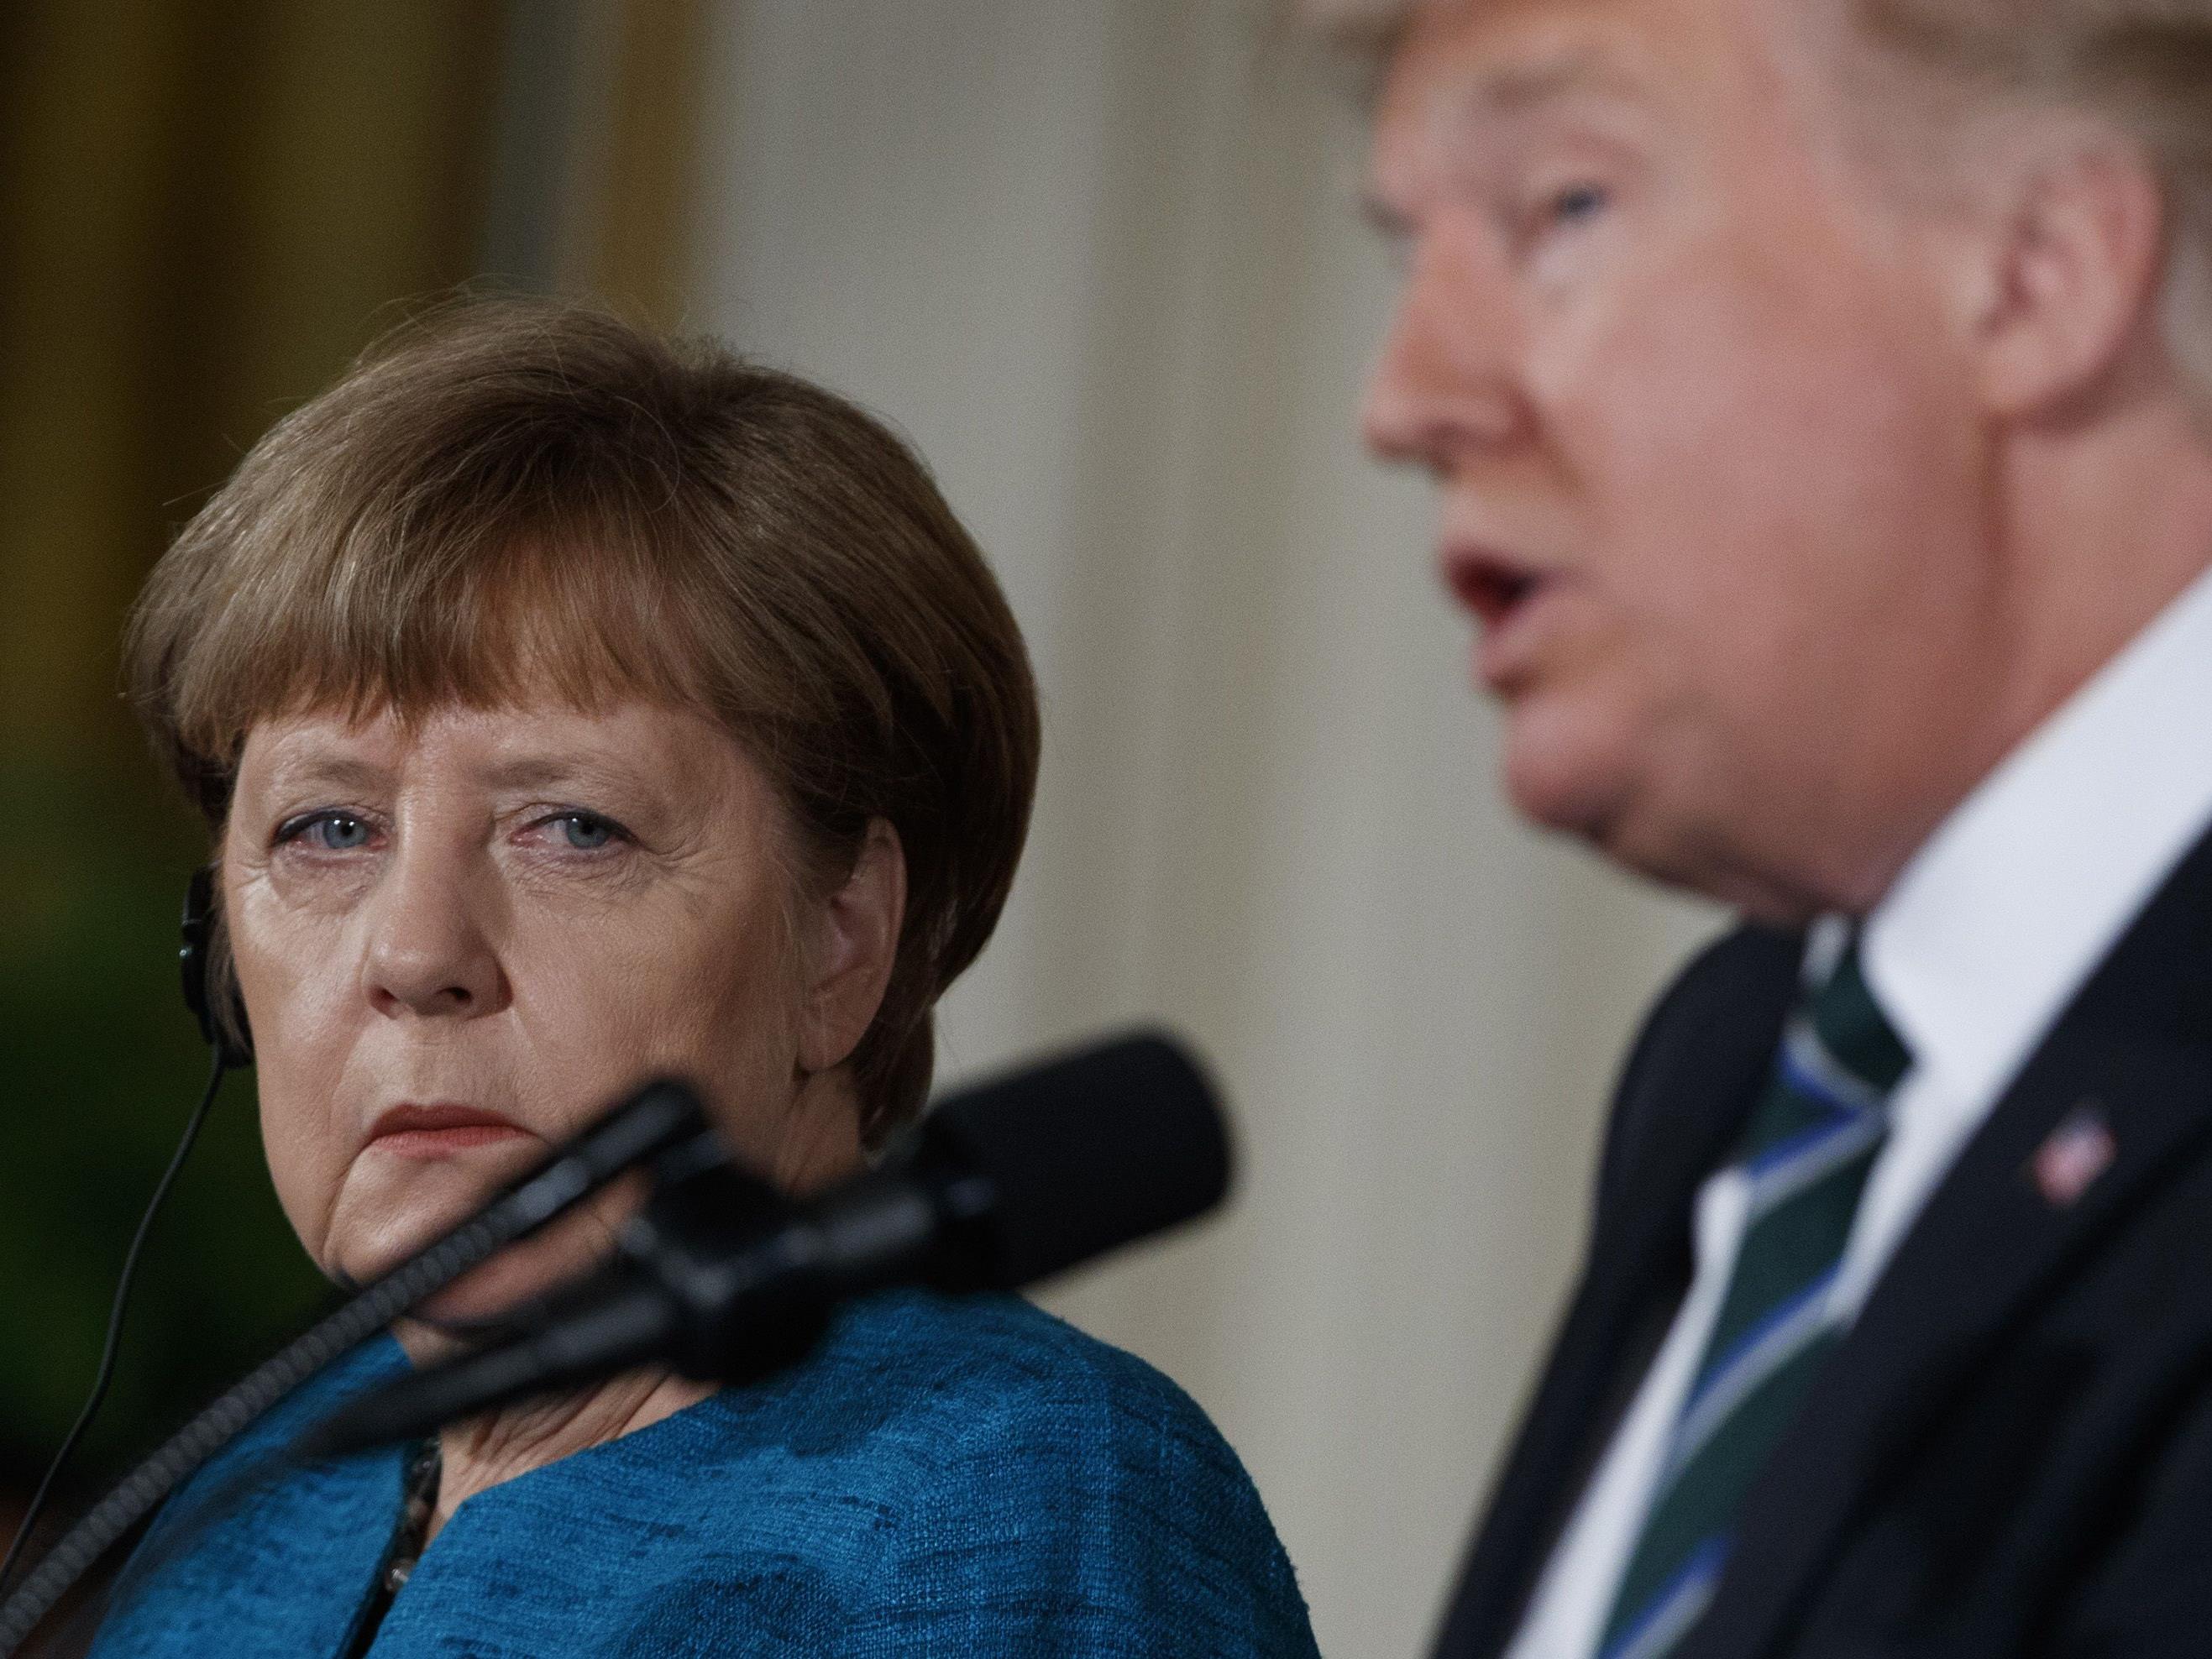 Das erste Treffen zwischen den so unterschiedlichen Politikern Merkel und Trump kann nicht alle Spannungen beseitigen.